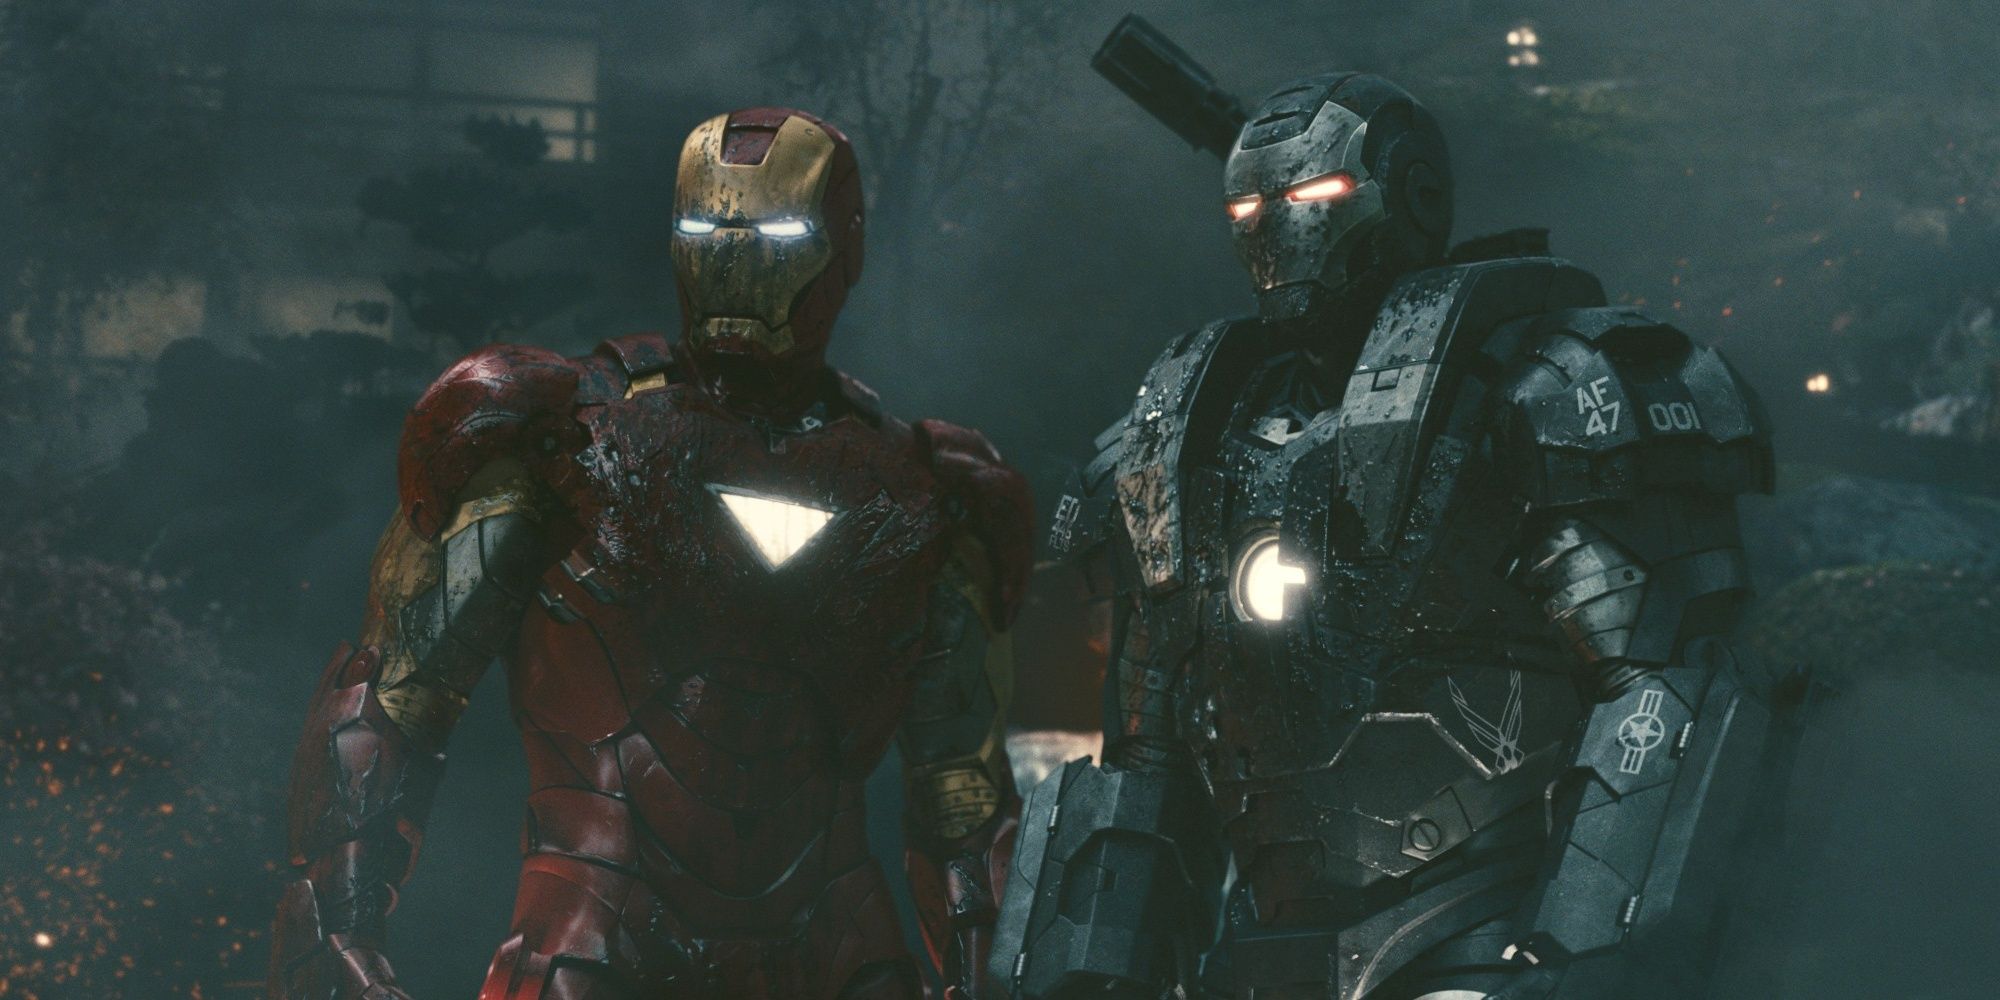 Iron Man and War Machine team up in Iron Man 2